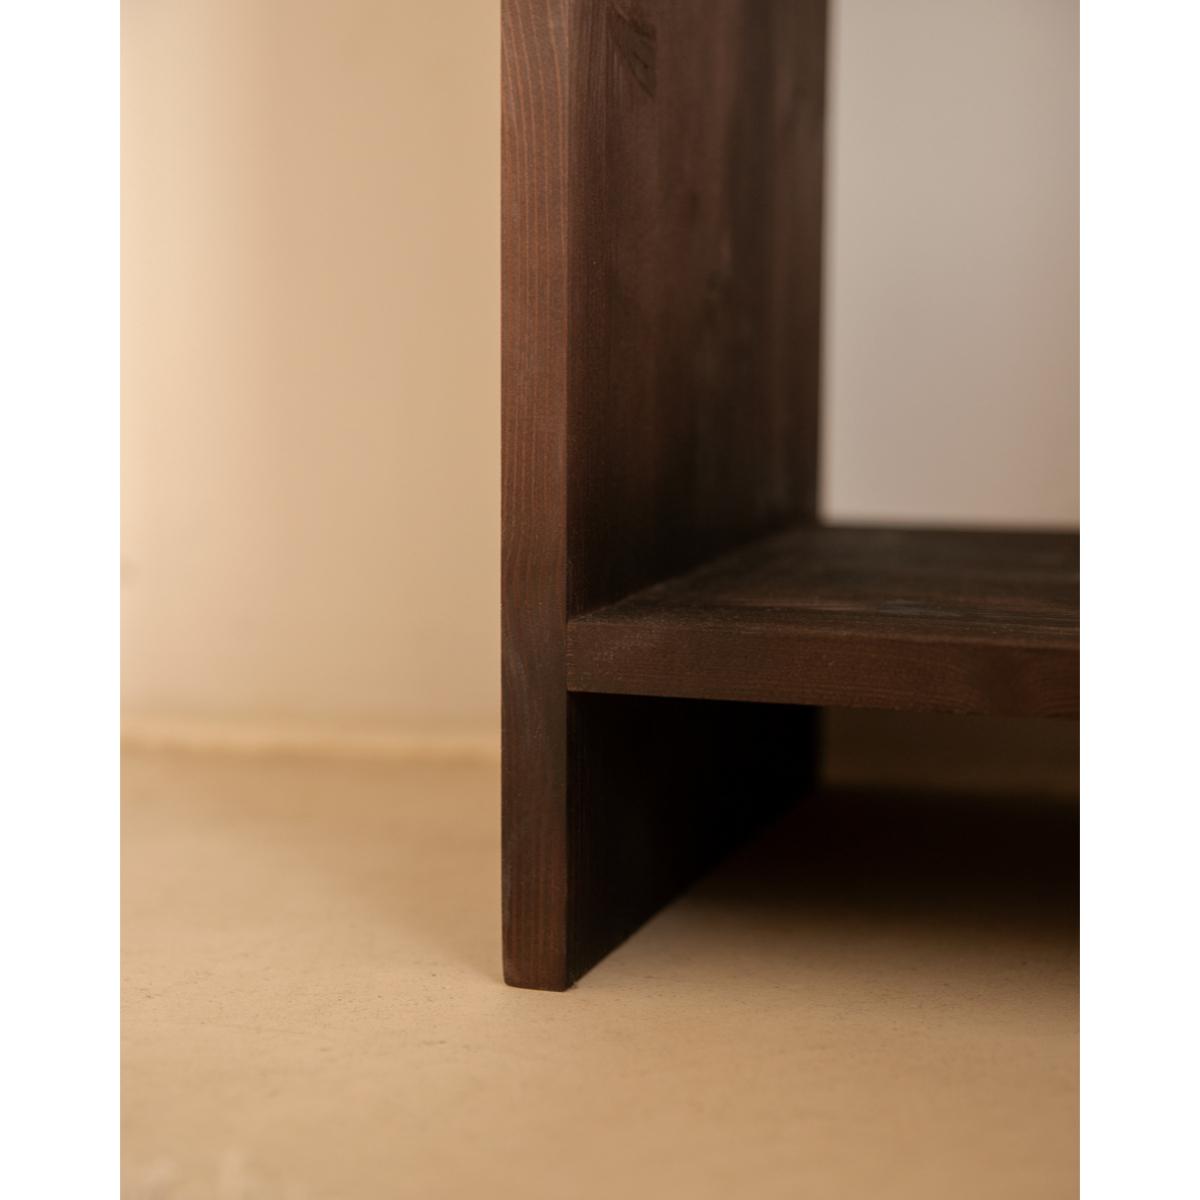 Table de chevet en bois massif avec un tiroir en blanc 60x40cm Hauteur: 60 Longueur: 40 Largeur: 29.5